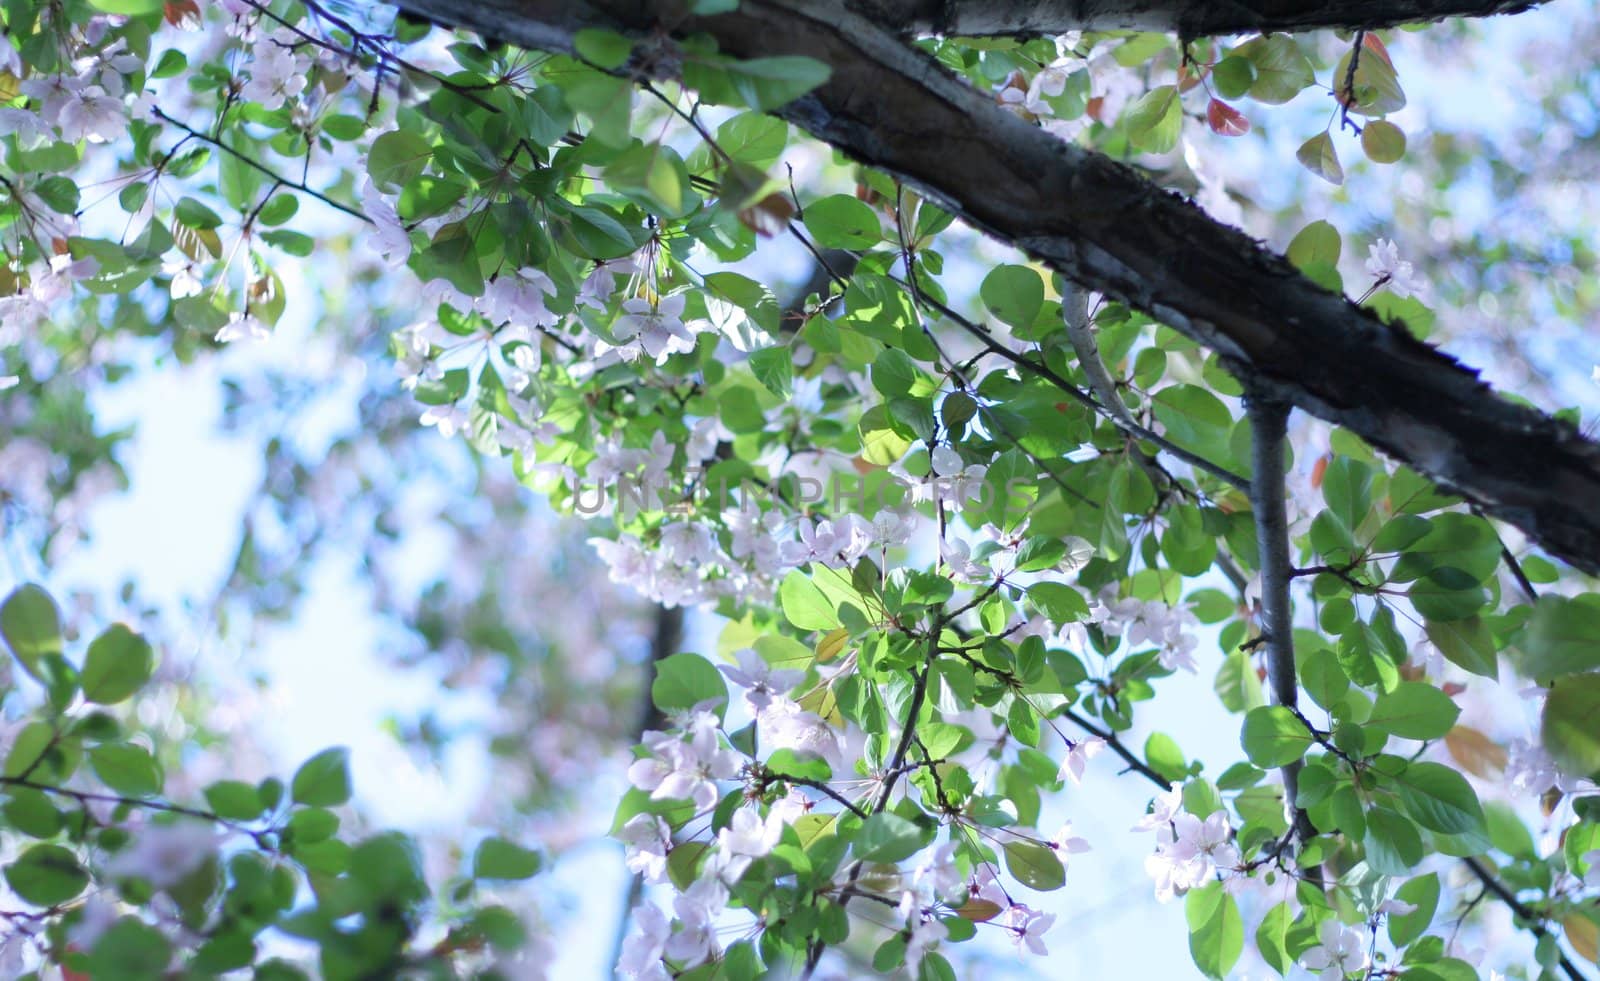 Plum, cherry blossoms by jarenwicklund